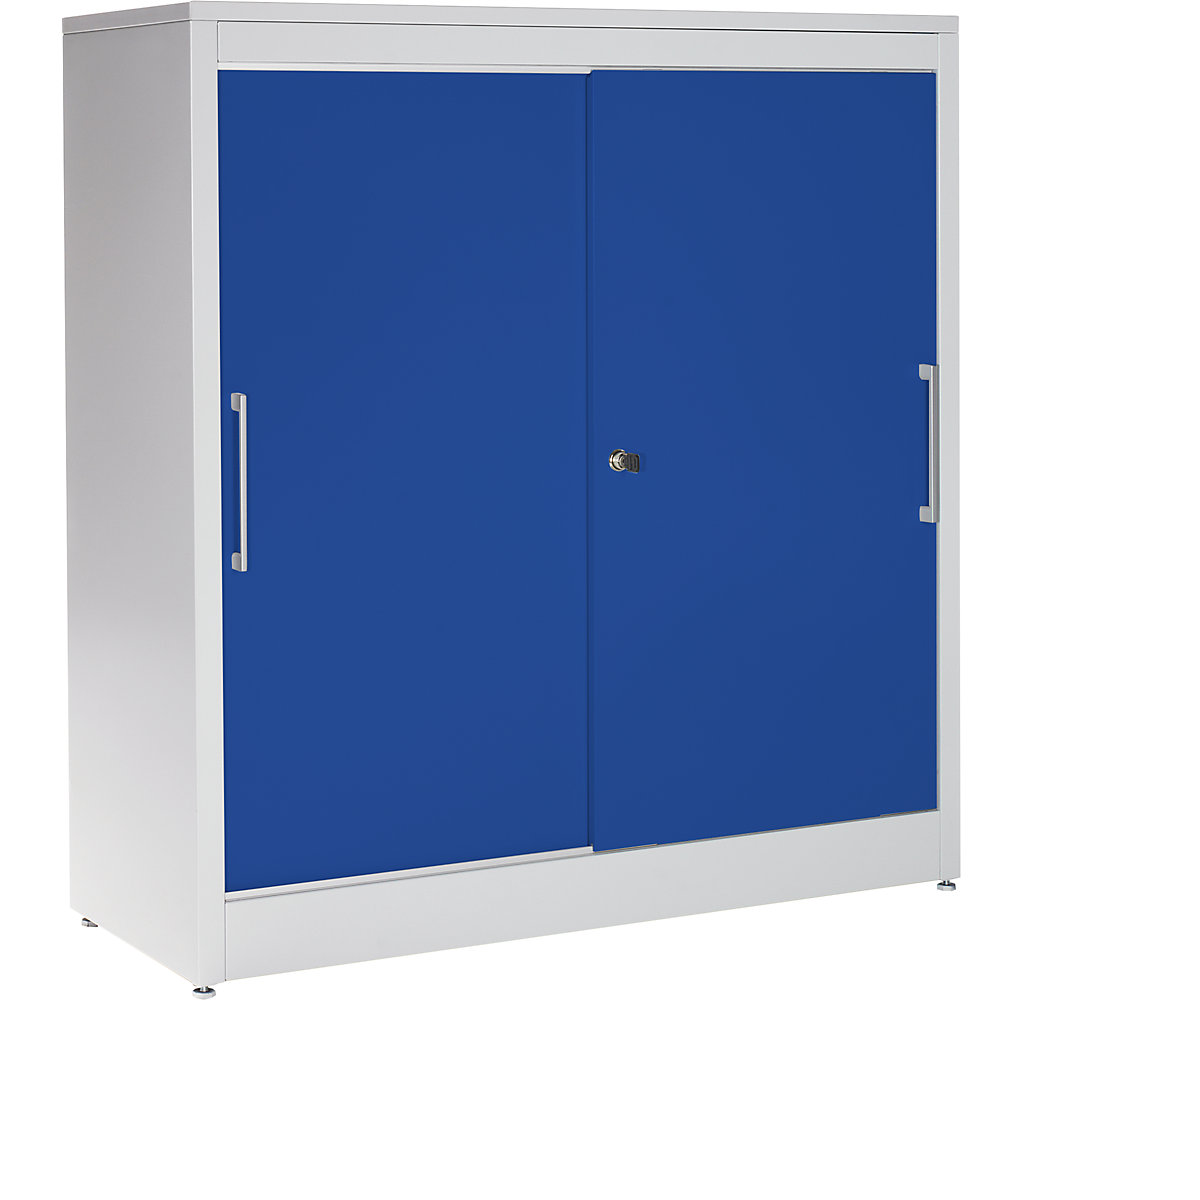 Omara z drsnimi vrati – mauser, nizka omarica z 2 policama, VxŠxG 1240 x 1200 x 420 mm, svetlo siva / ultramarin modra-5